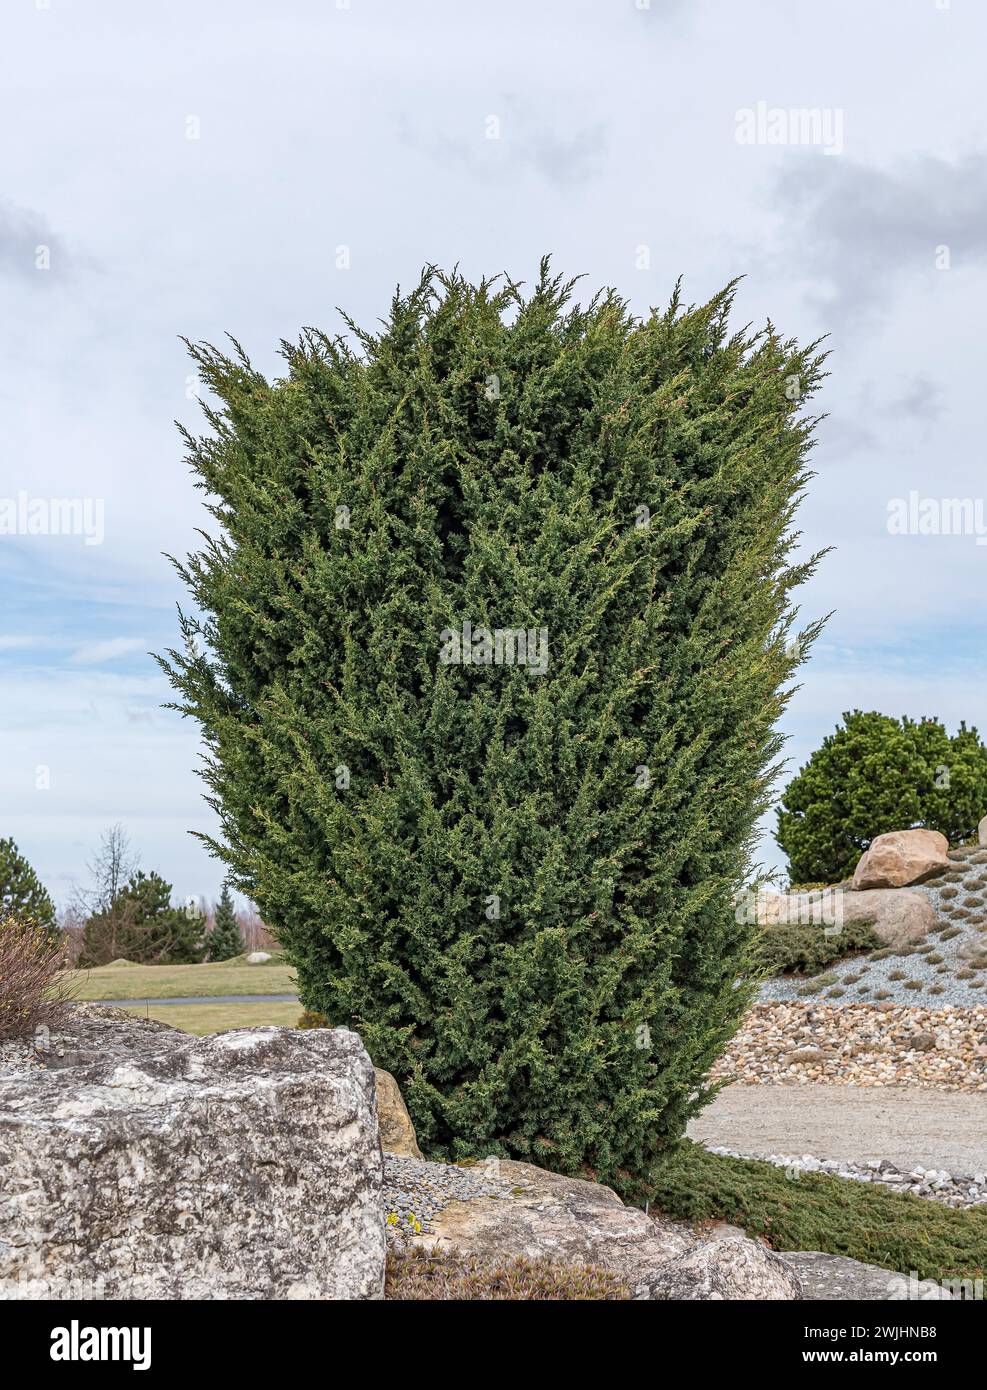 Chinese juniper (Juniperus chinensis 'Blaauw') Stock Photo